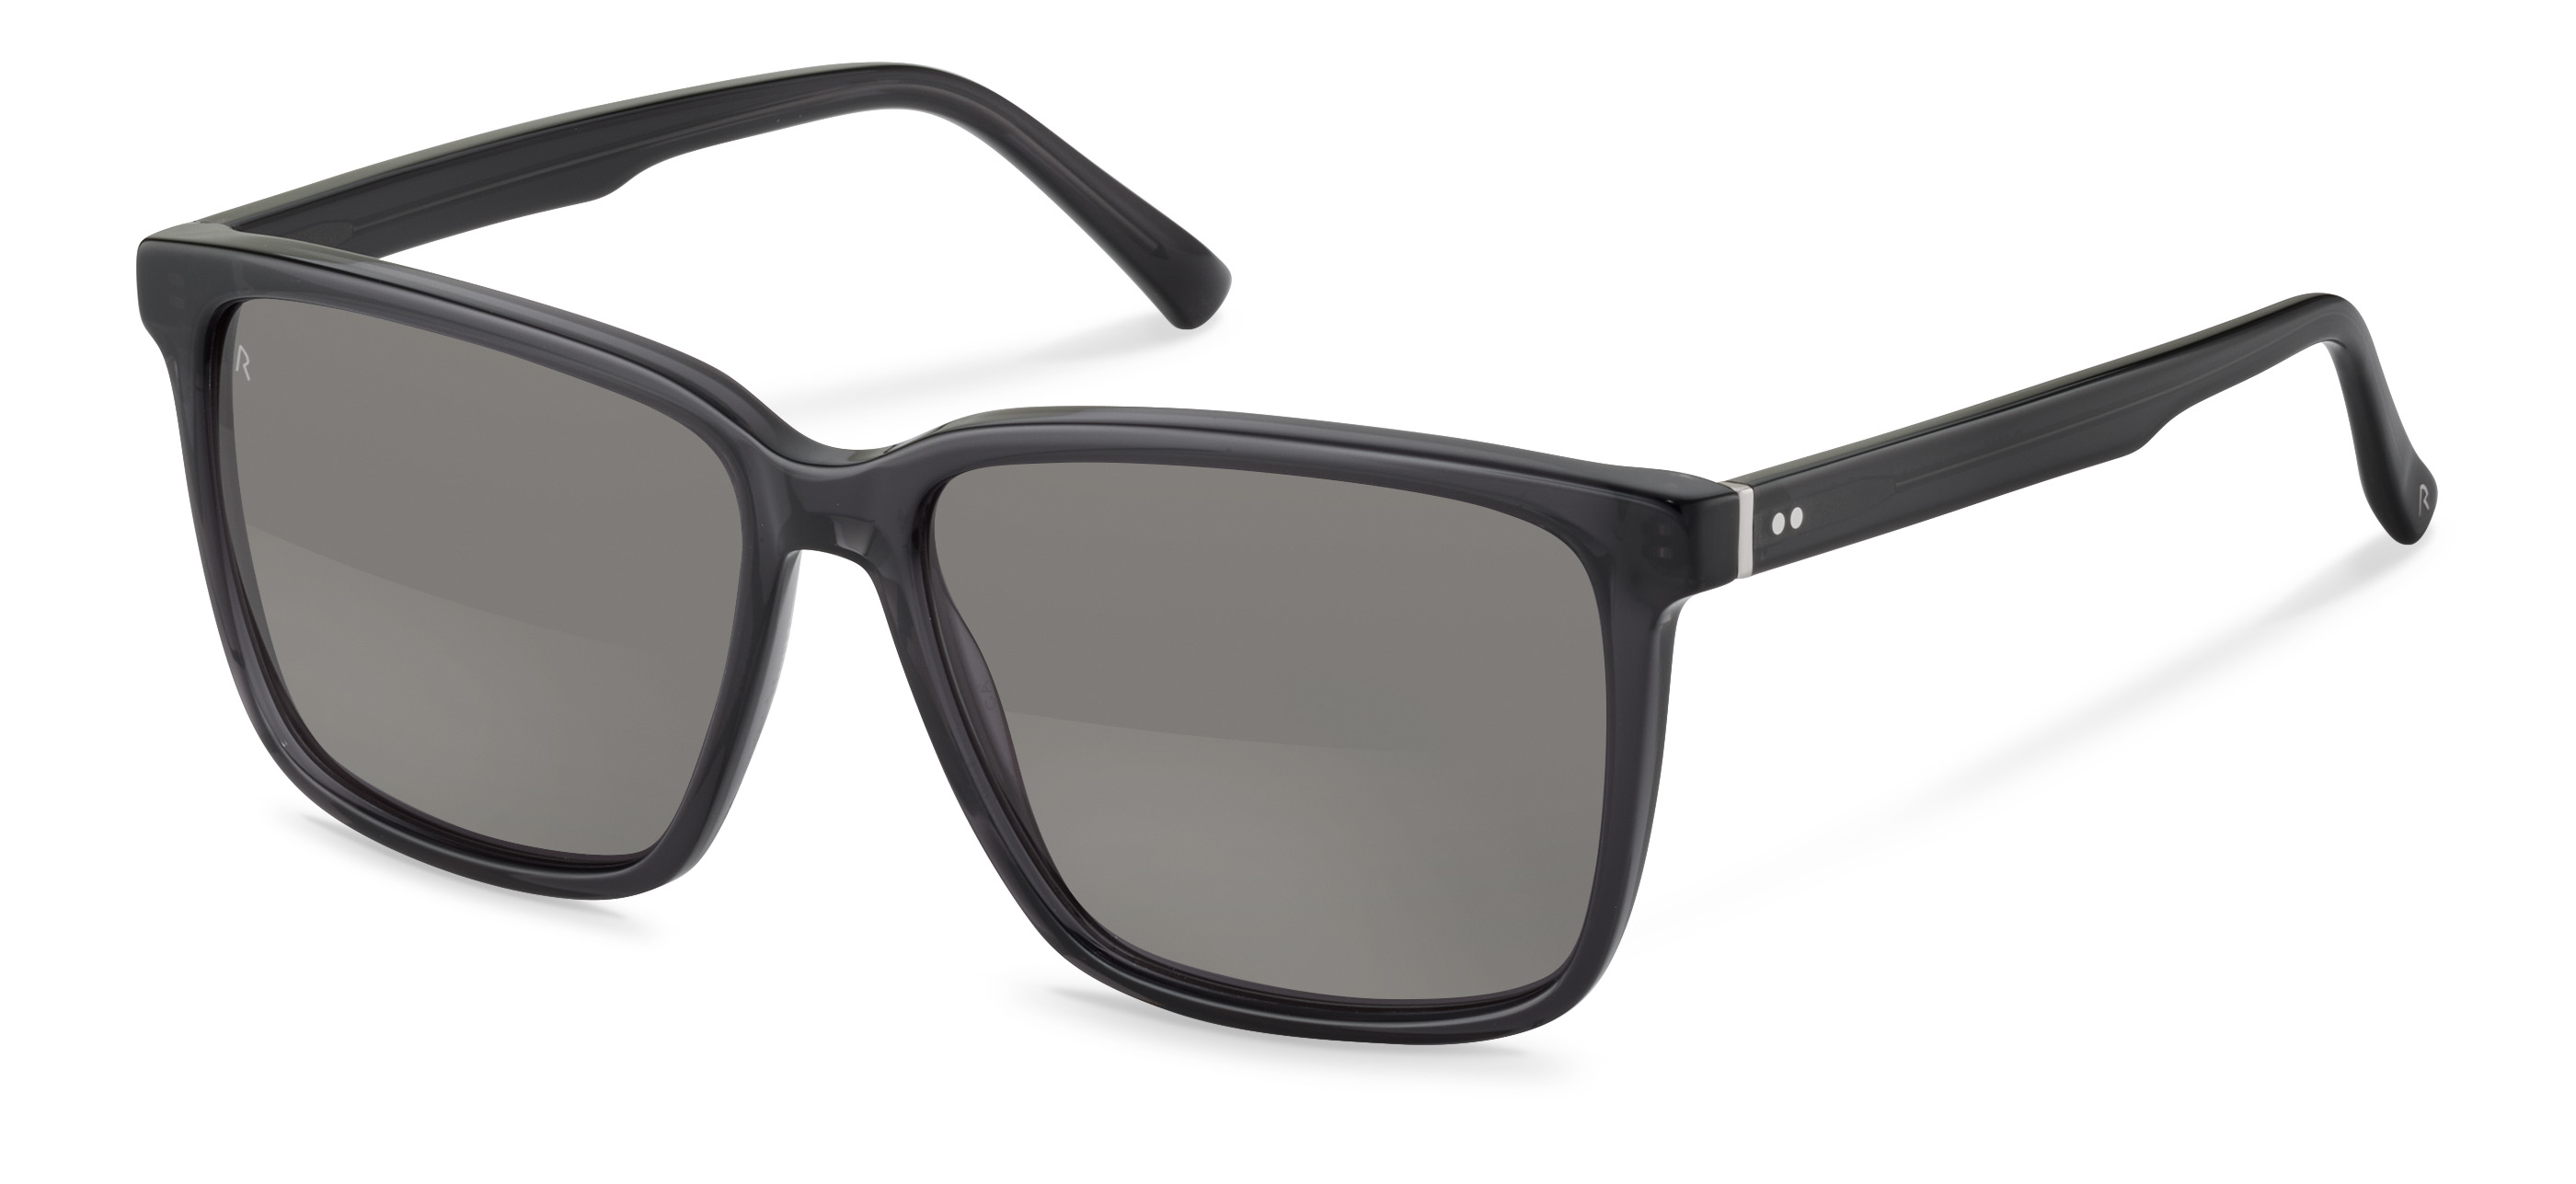 Rodenstock-Slnečné okuliare-R3336-black